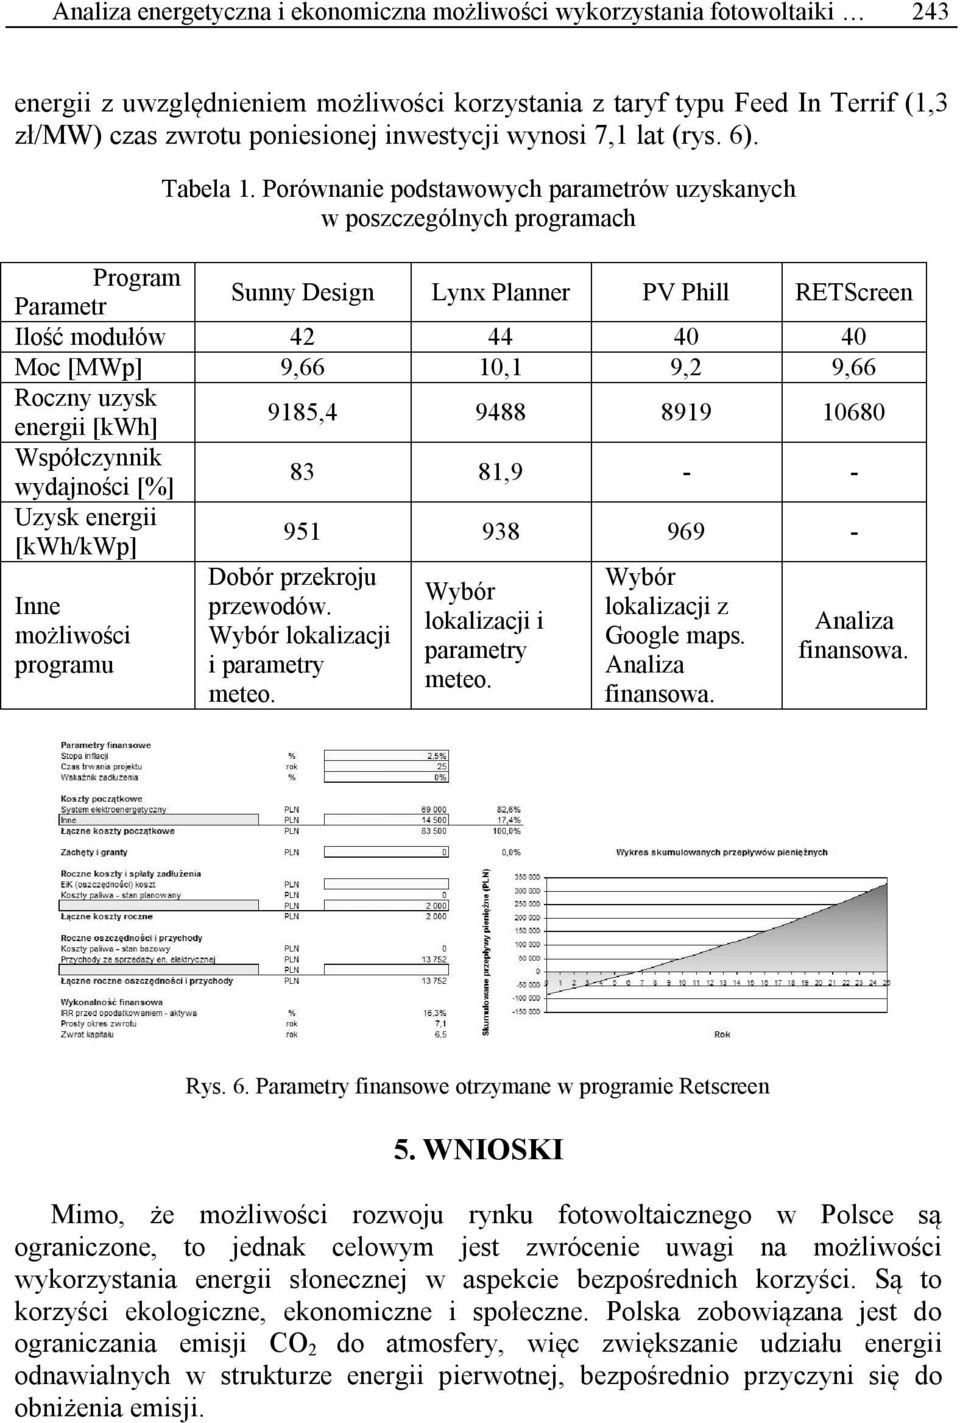 Porównanie podstawowych parametrów uzyskanych w poszczególnych programach Program Parametr Sunny Design Lynx Planner PV Phill RETScreen Ilość modułów 42 44 40 40 Moc [MWp] 9,66 10,1 9,2 9,66 Roczny